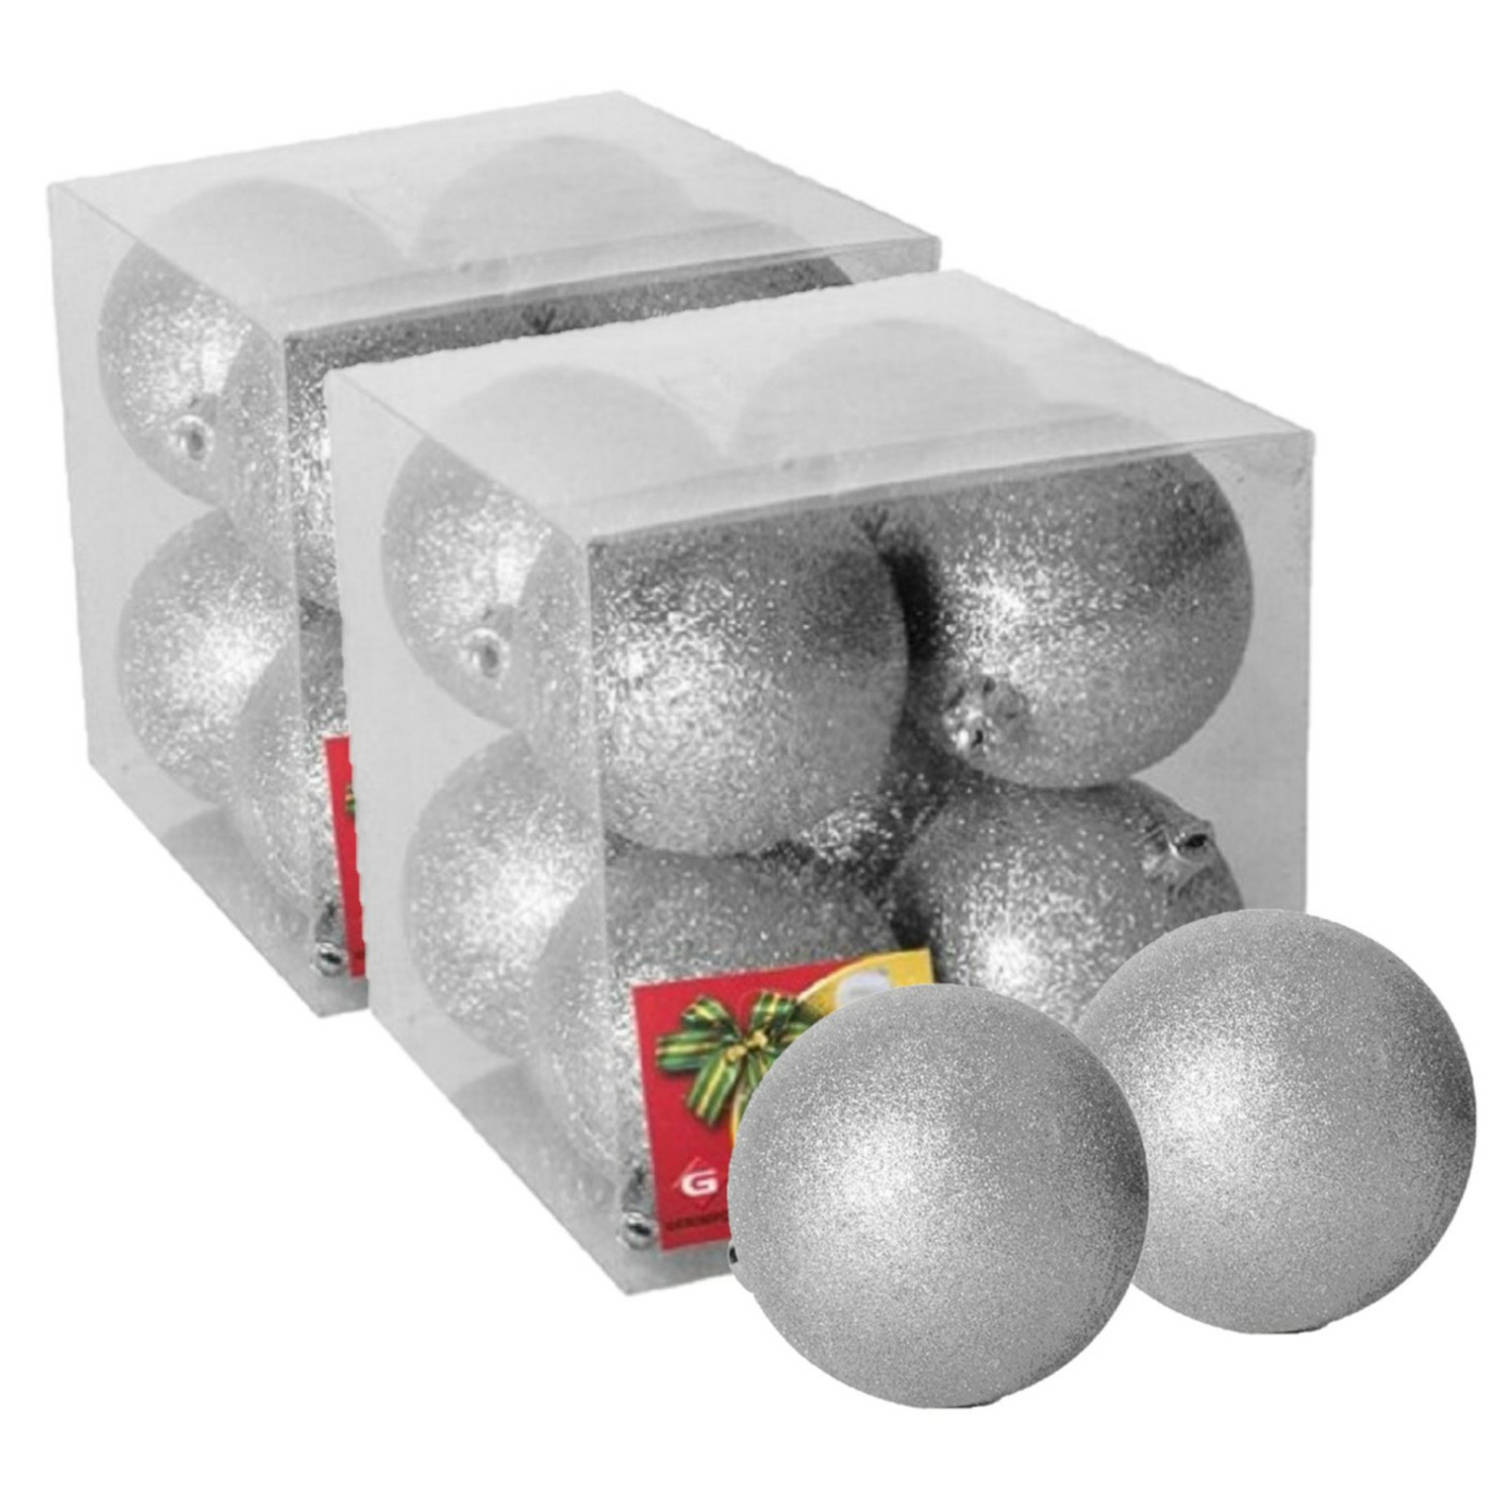 16x stuks kerstballen zilver glitters kunststof 7 cm Kerstbal